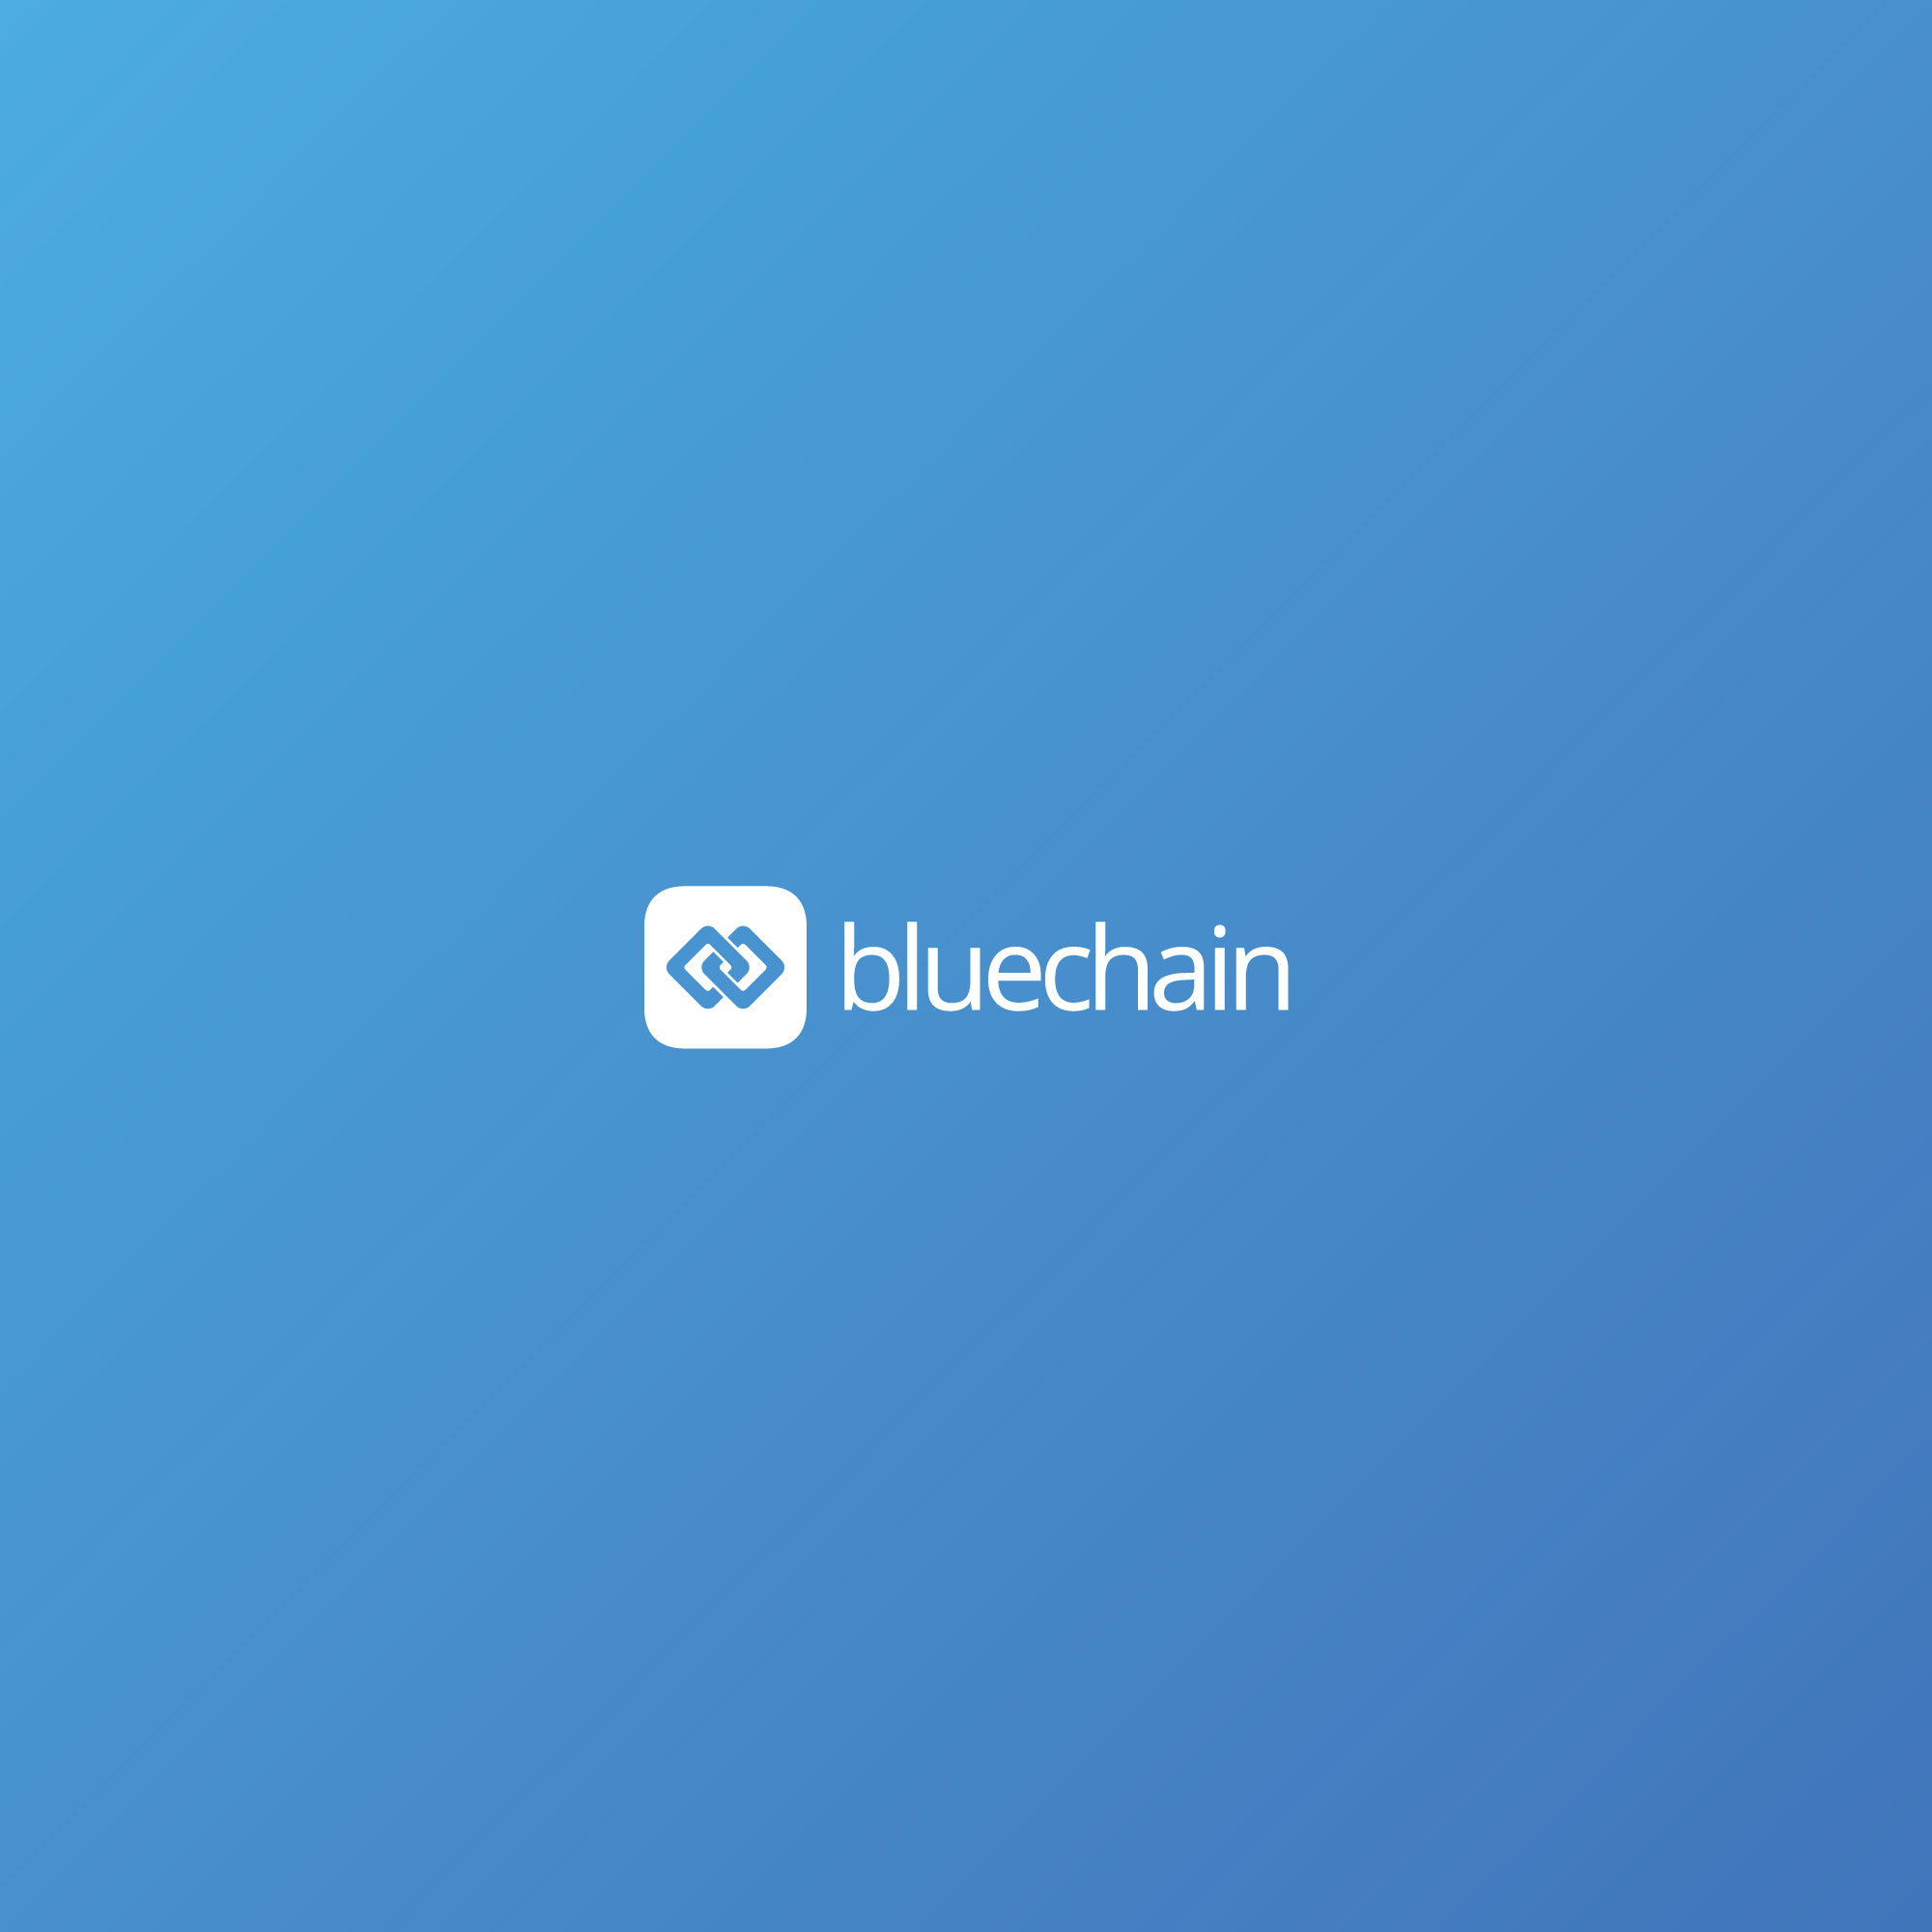 www.bluechain.com